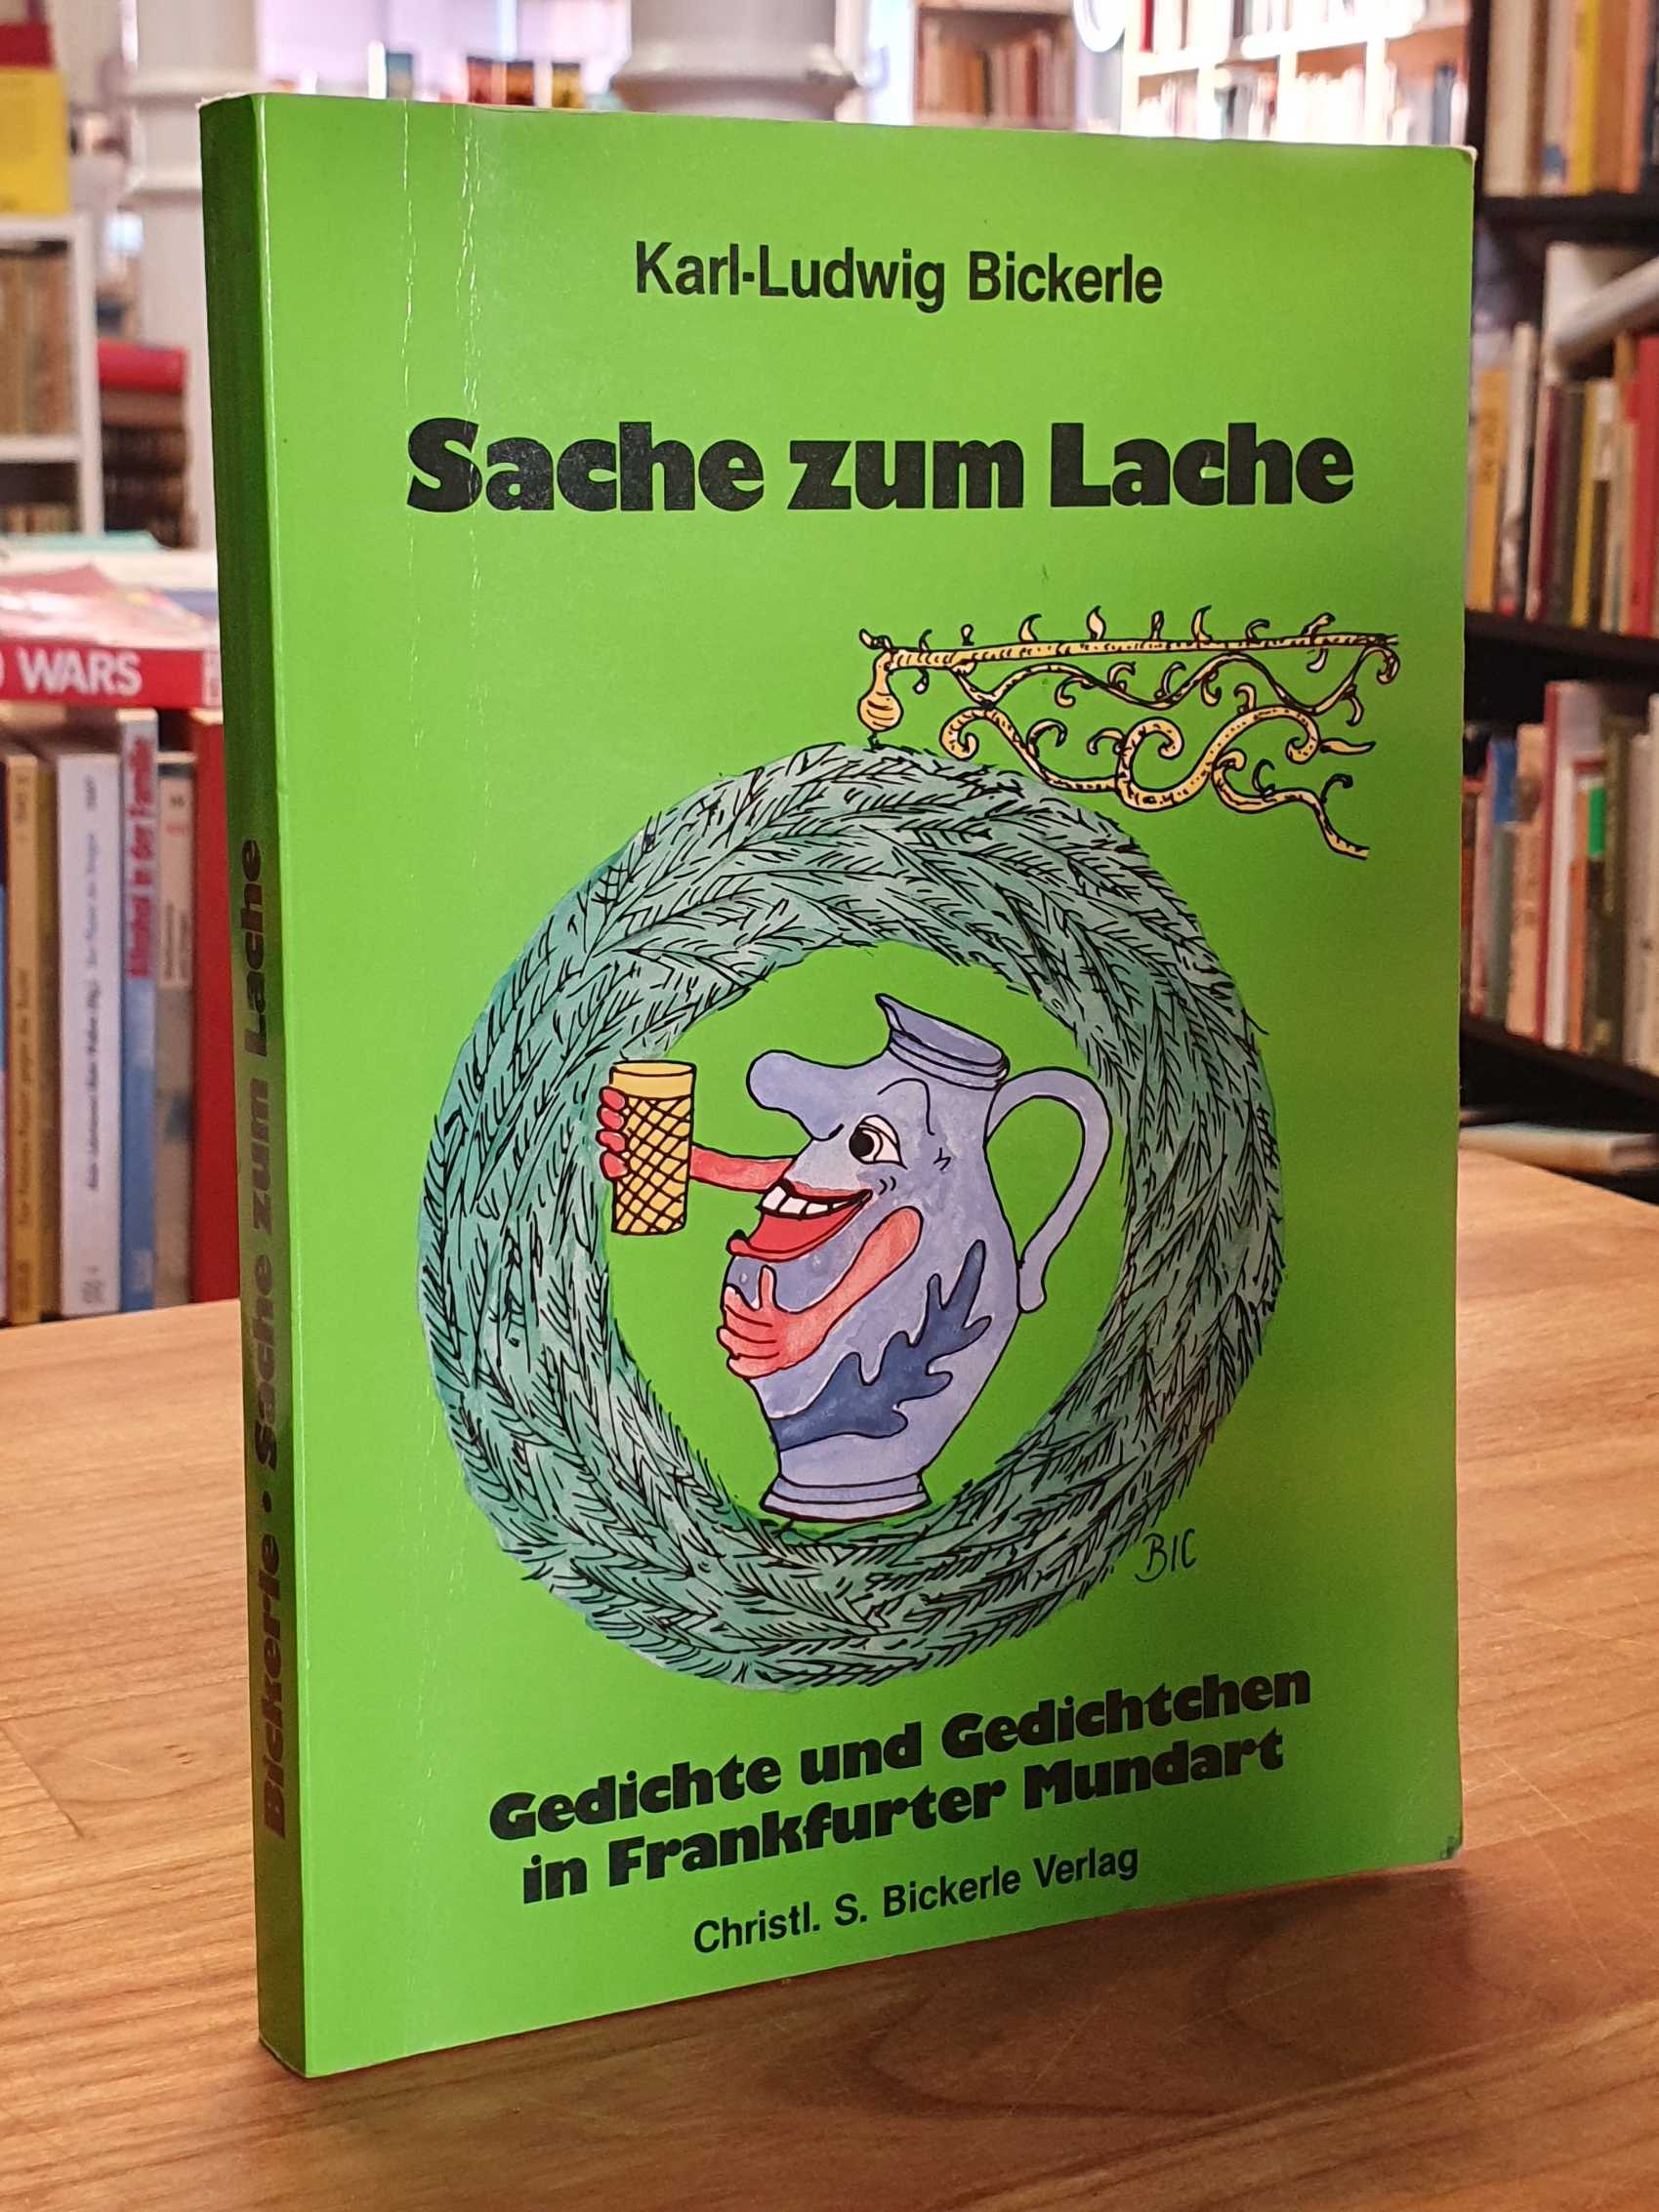 Bickerle, Sache zum Lache – Gedichte und Gedichtchen in Frankfurter Mundart (sig